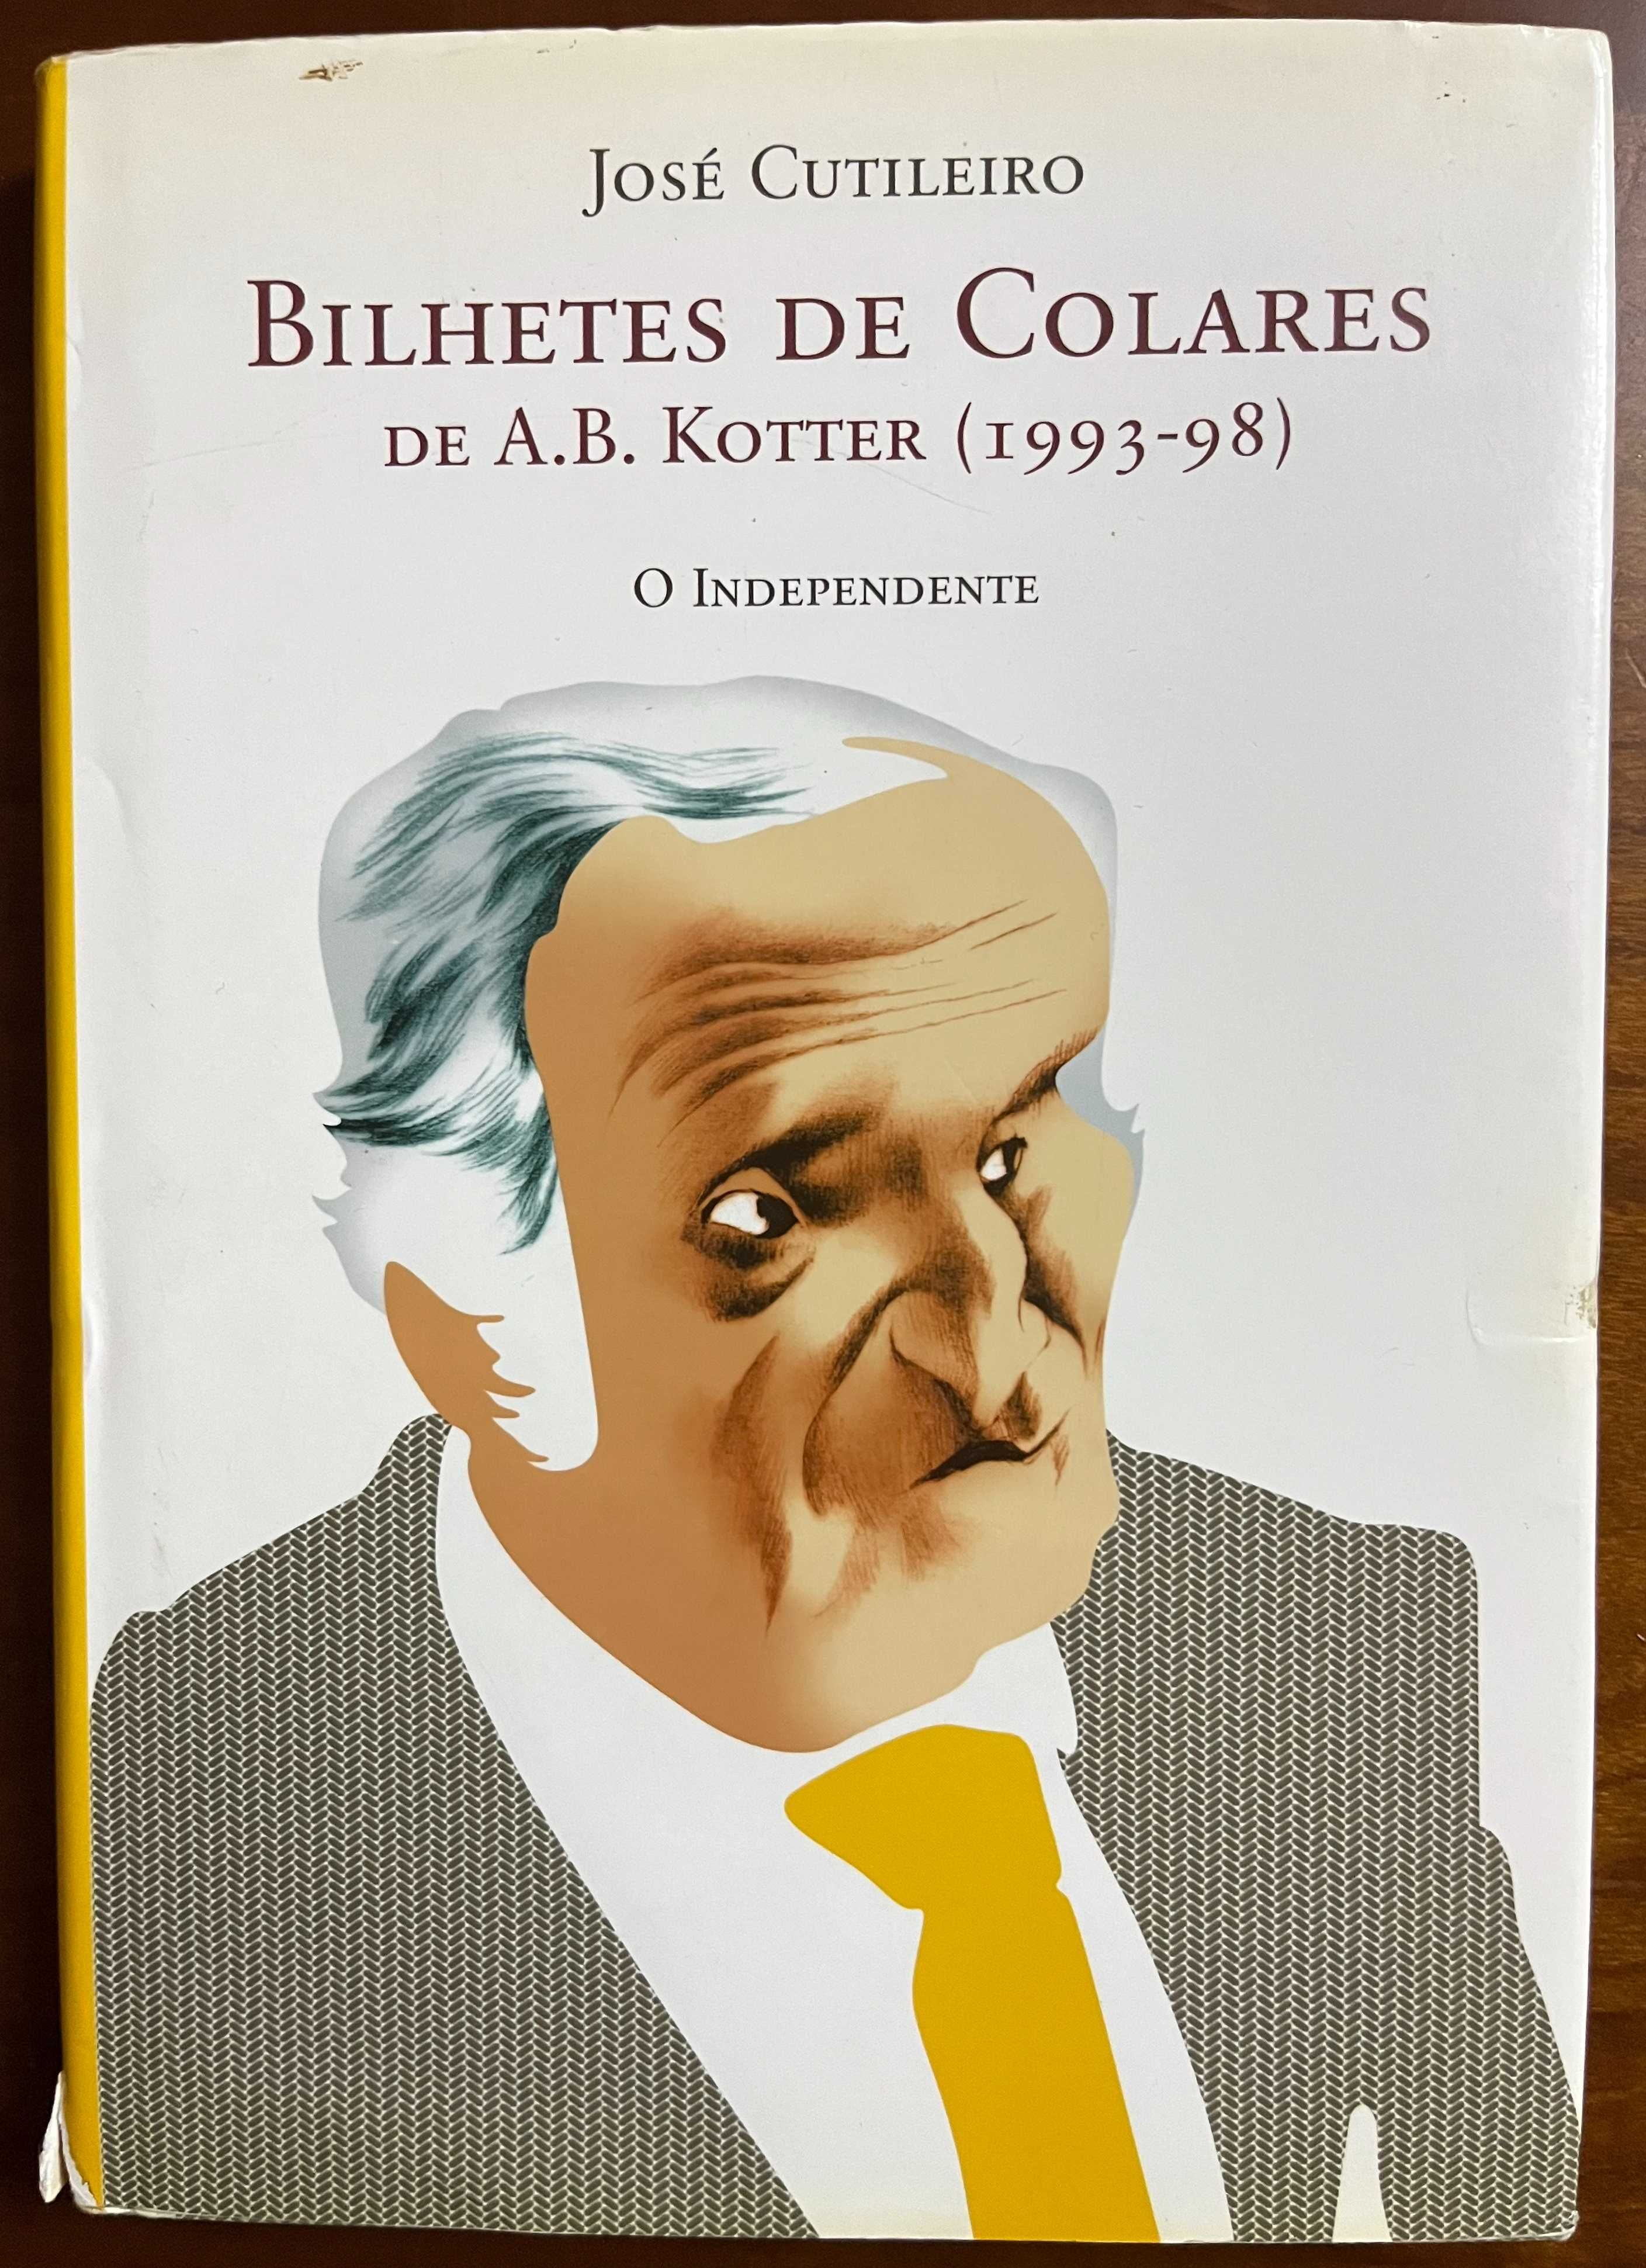 "Bilhetes de Colares" de A. B. Kotter